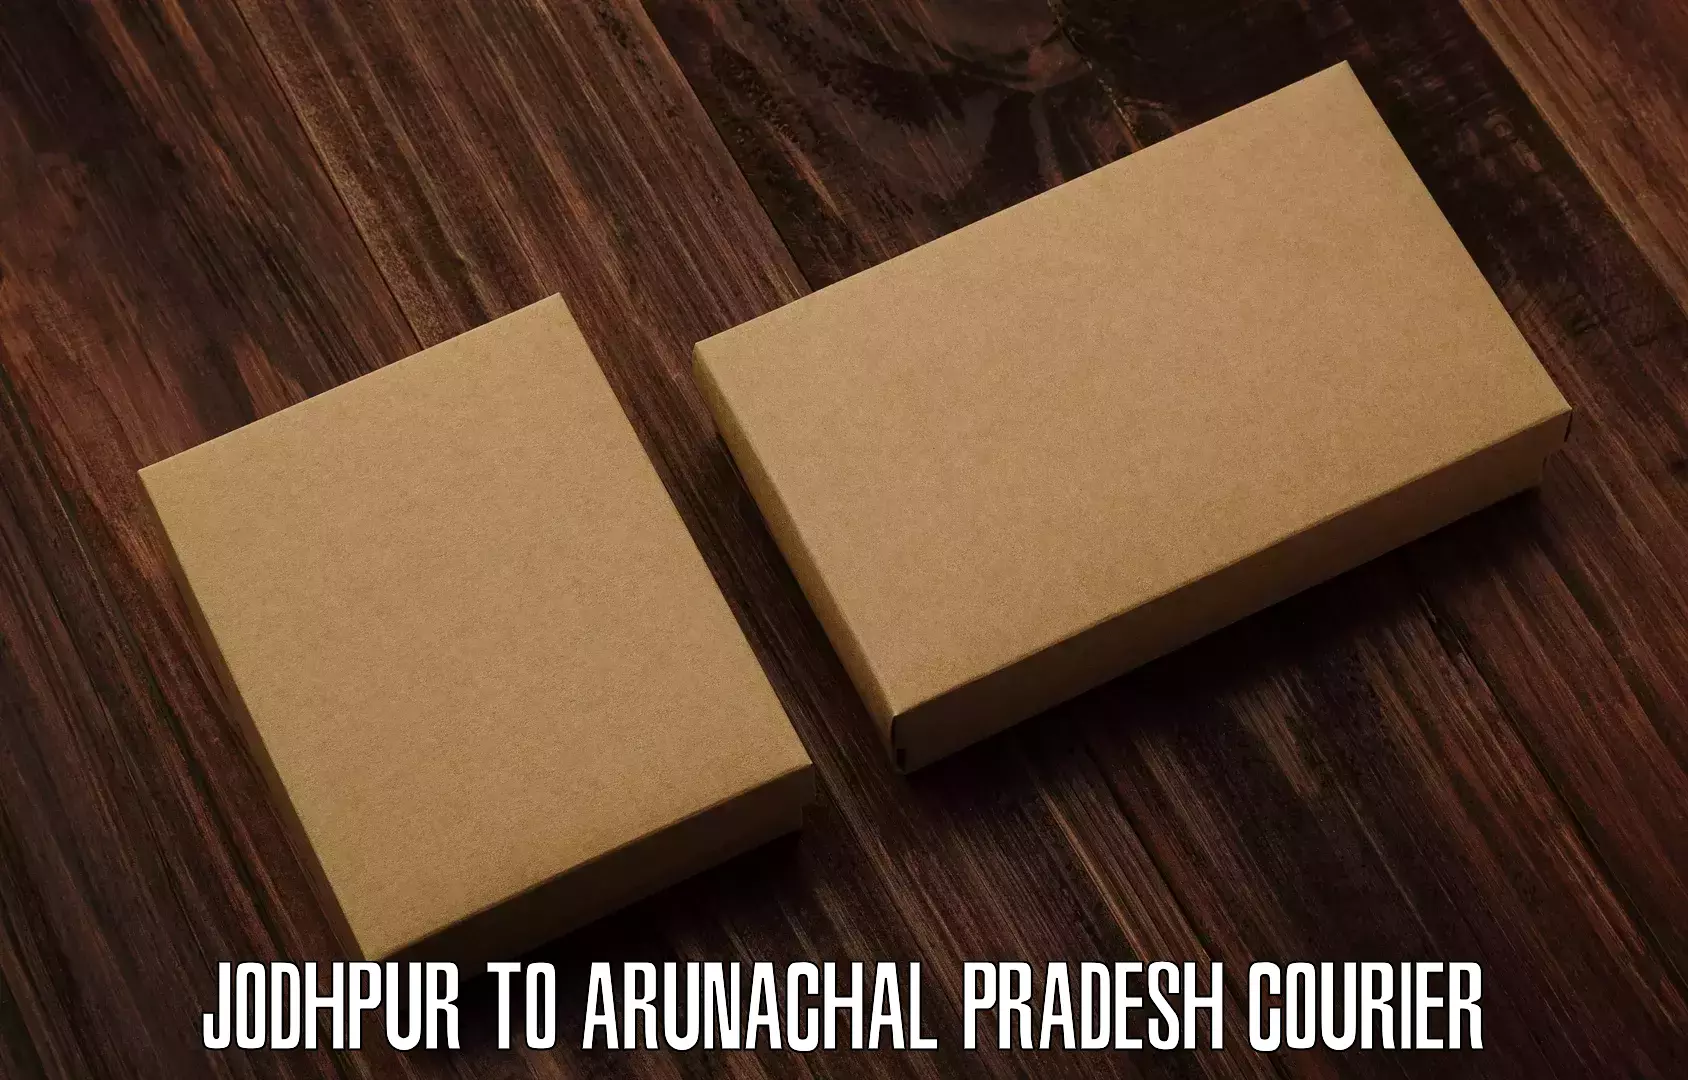 On-demand courier Jodhpur to Arunachal Pradesh